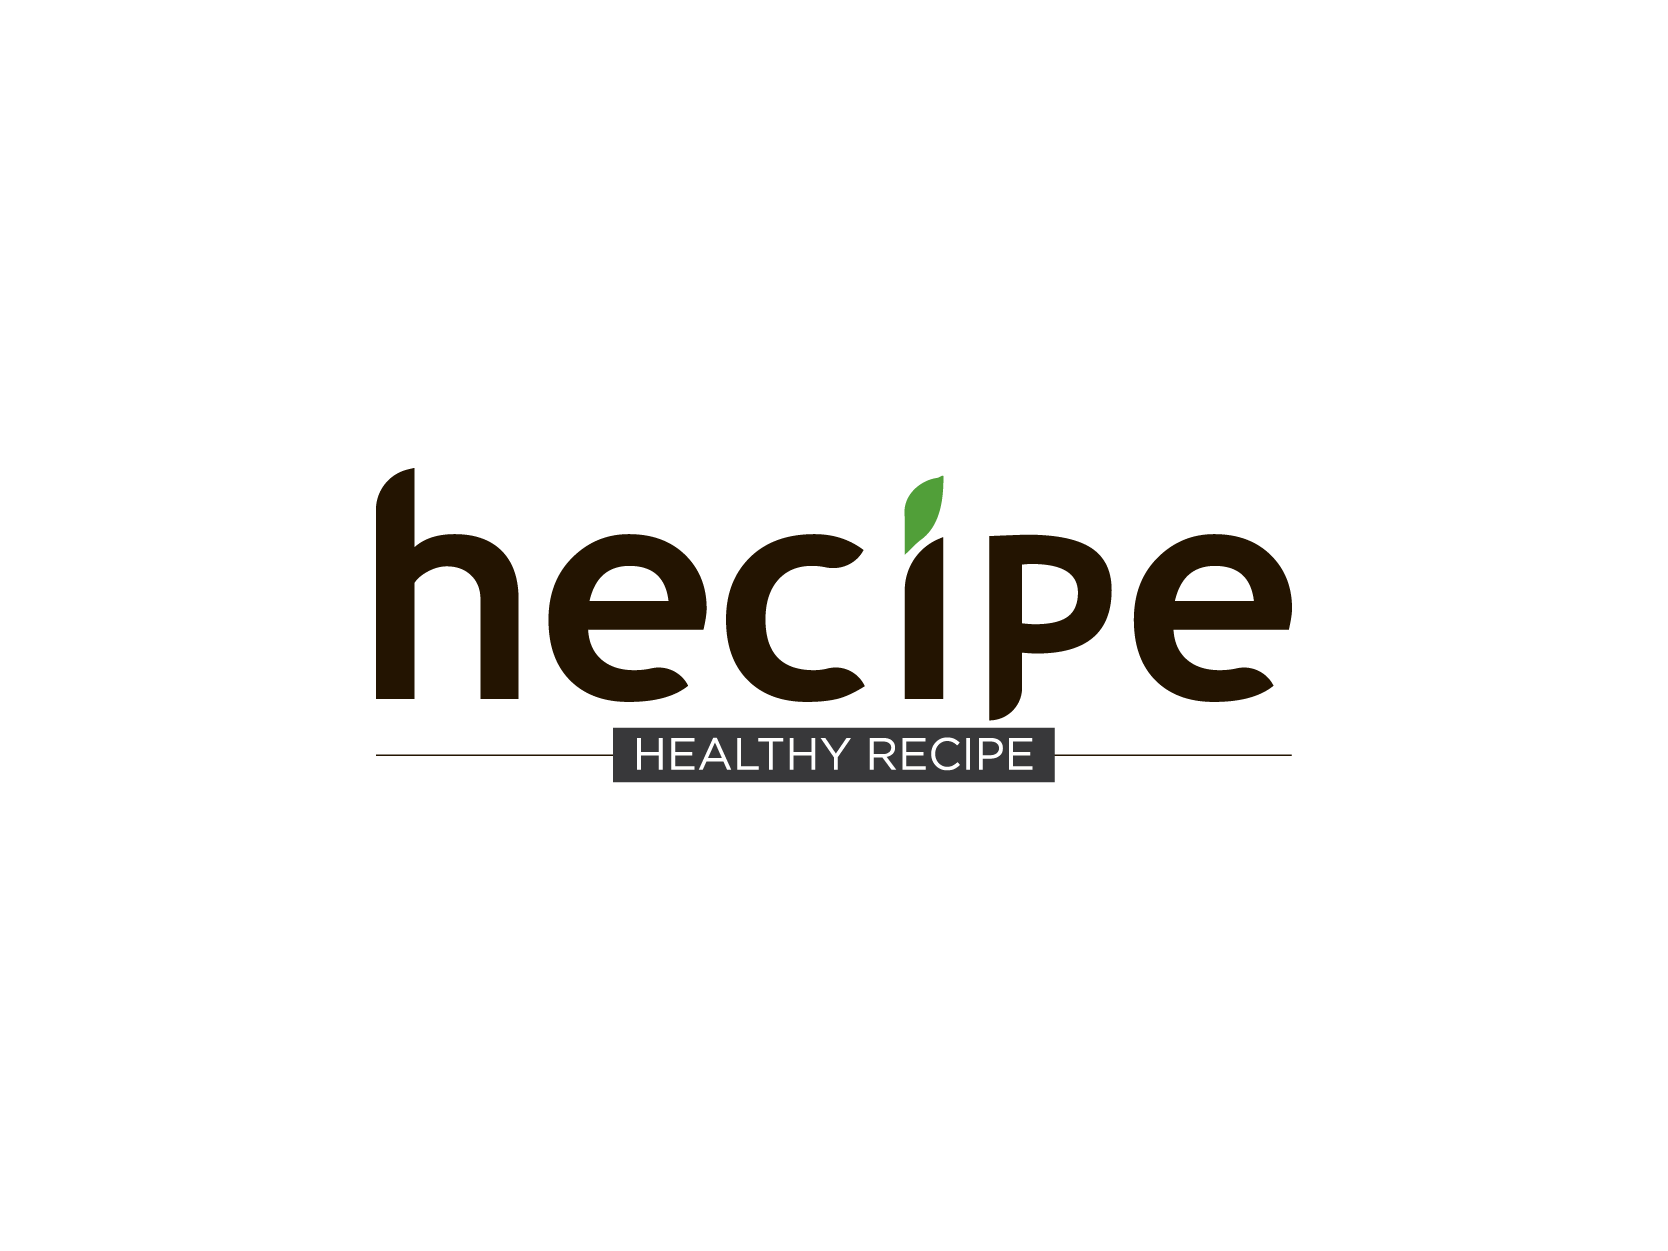  Hecipe Logo Design